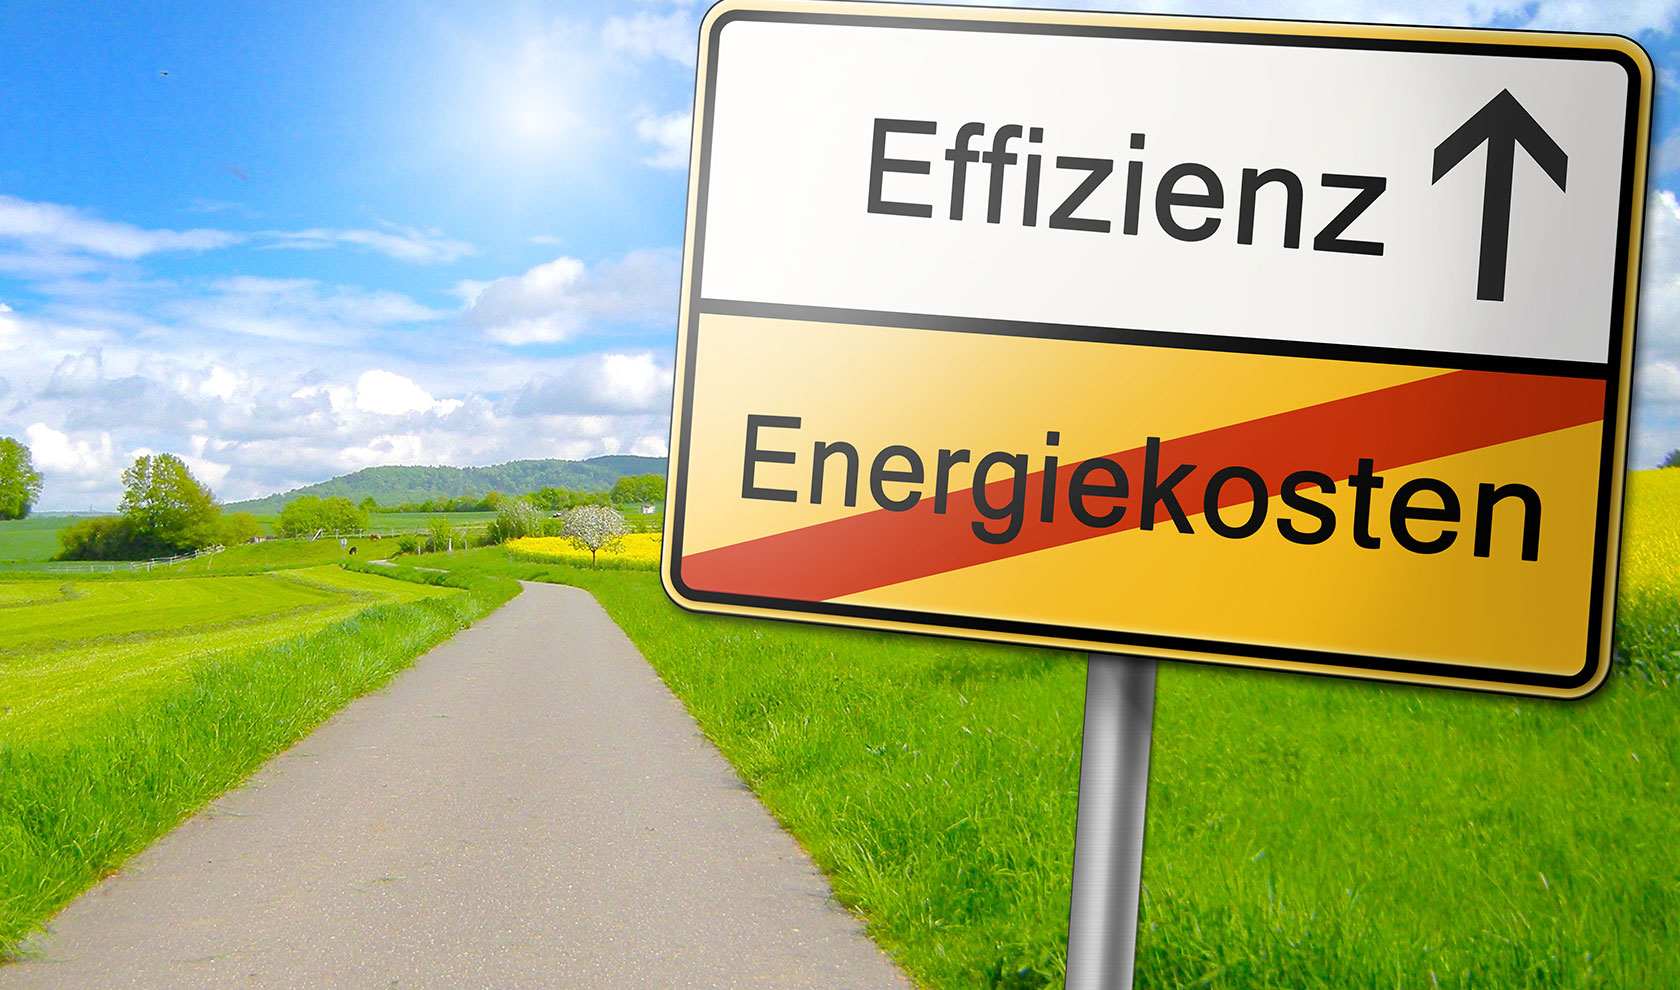 Efiizienz-Bannerbilder für Danfoss-Wärmetechnik, Ortsschild, Energierkosten durchgestrichen, Effizienz mit Pfeil voraus